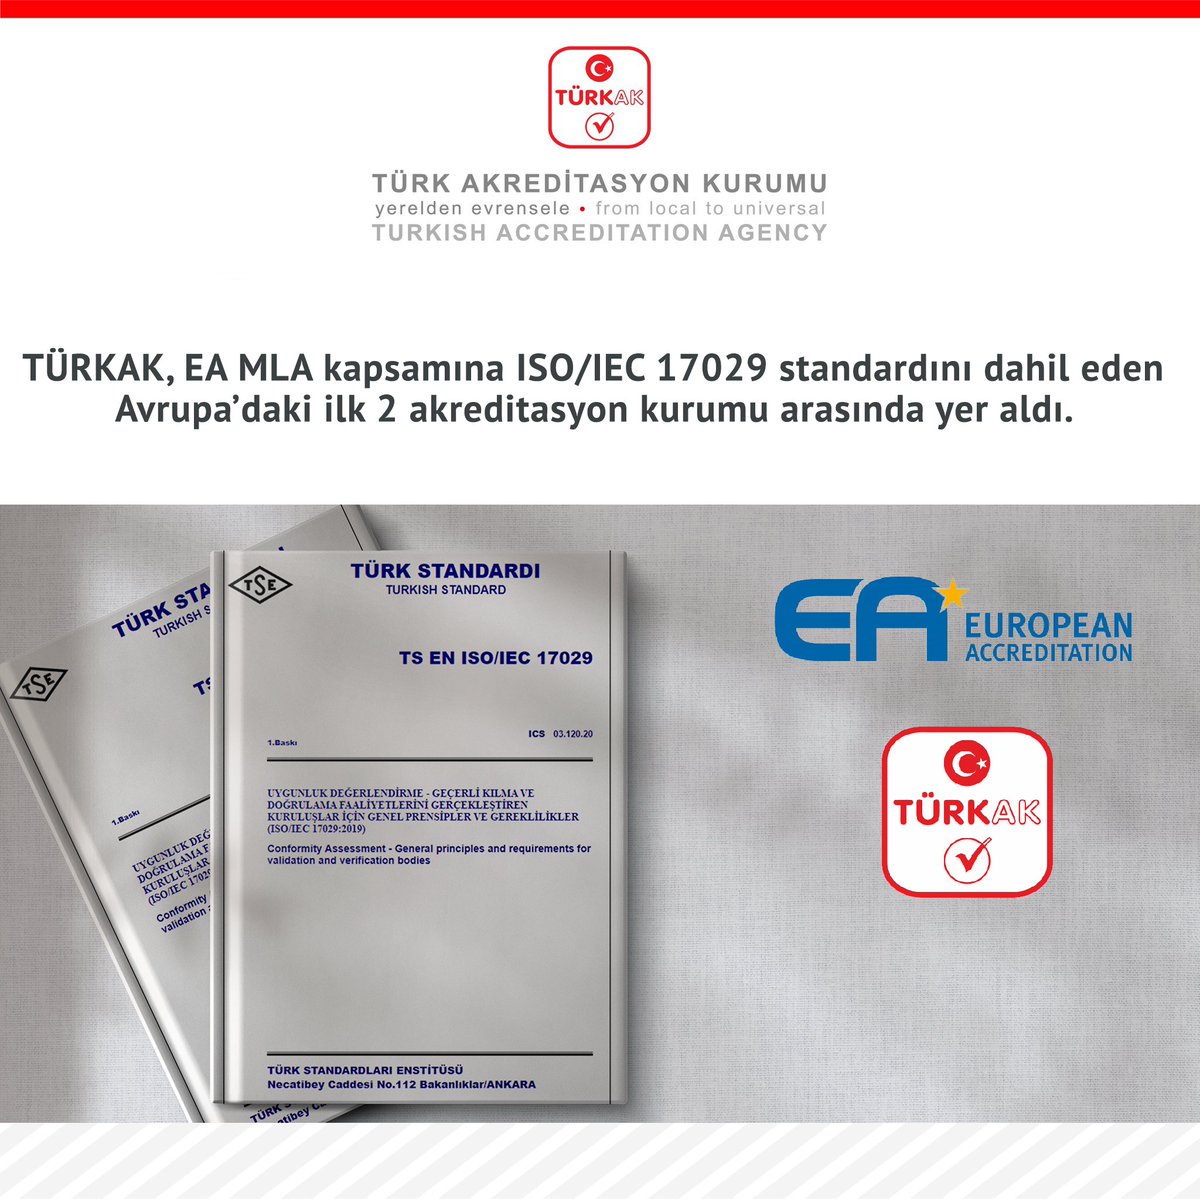 📌 TÜRKAK, EA MLA kapsamına ISO/IEC 17029 standardını dahil eden Avrupa’daki ilk 2 akreditasyon kurumu arasında yer aldı. 🔻 turkak.org.tr/haberler/turka…